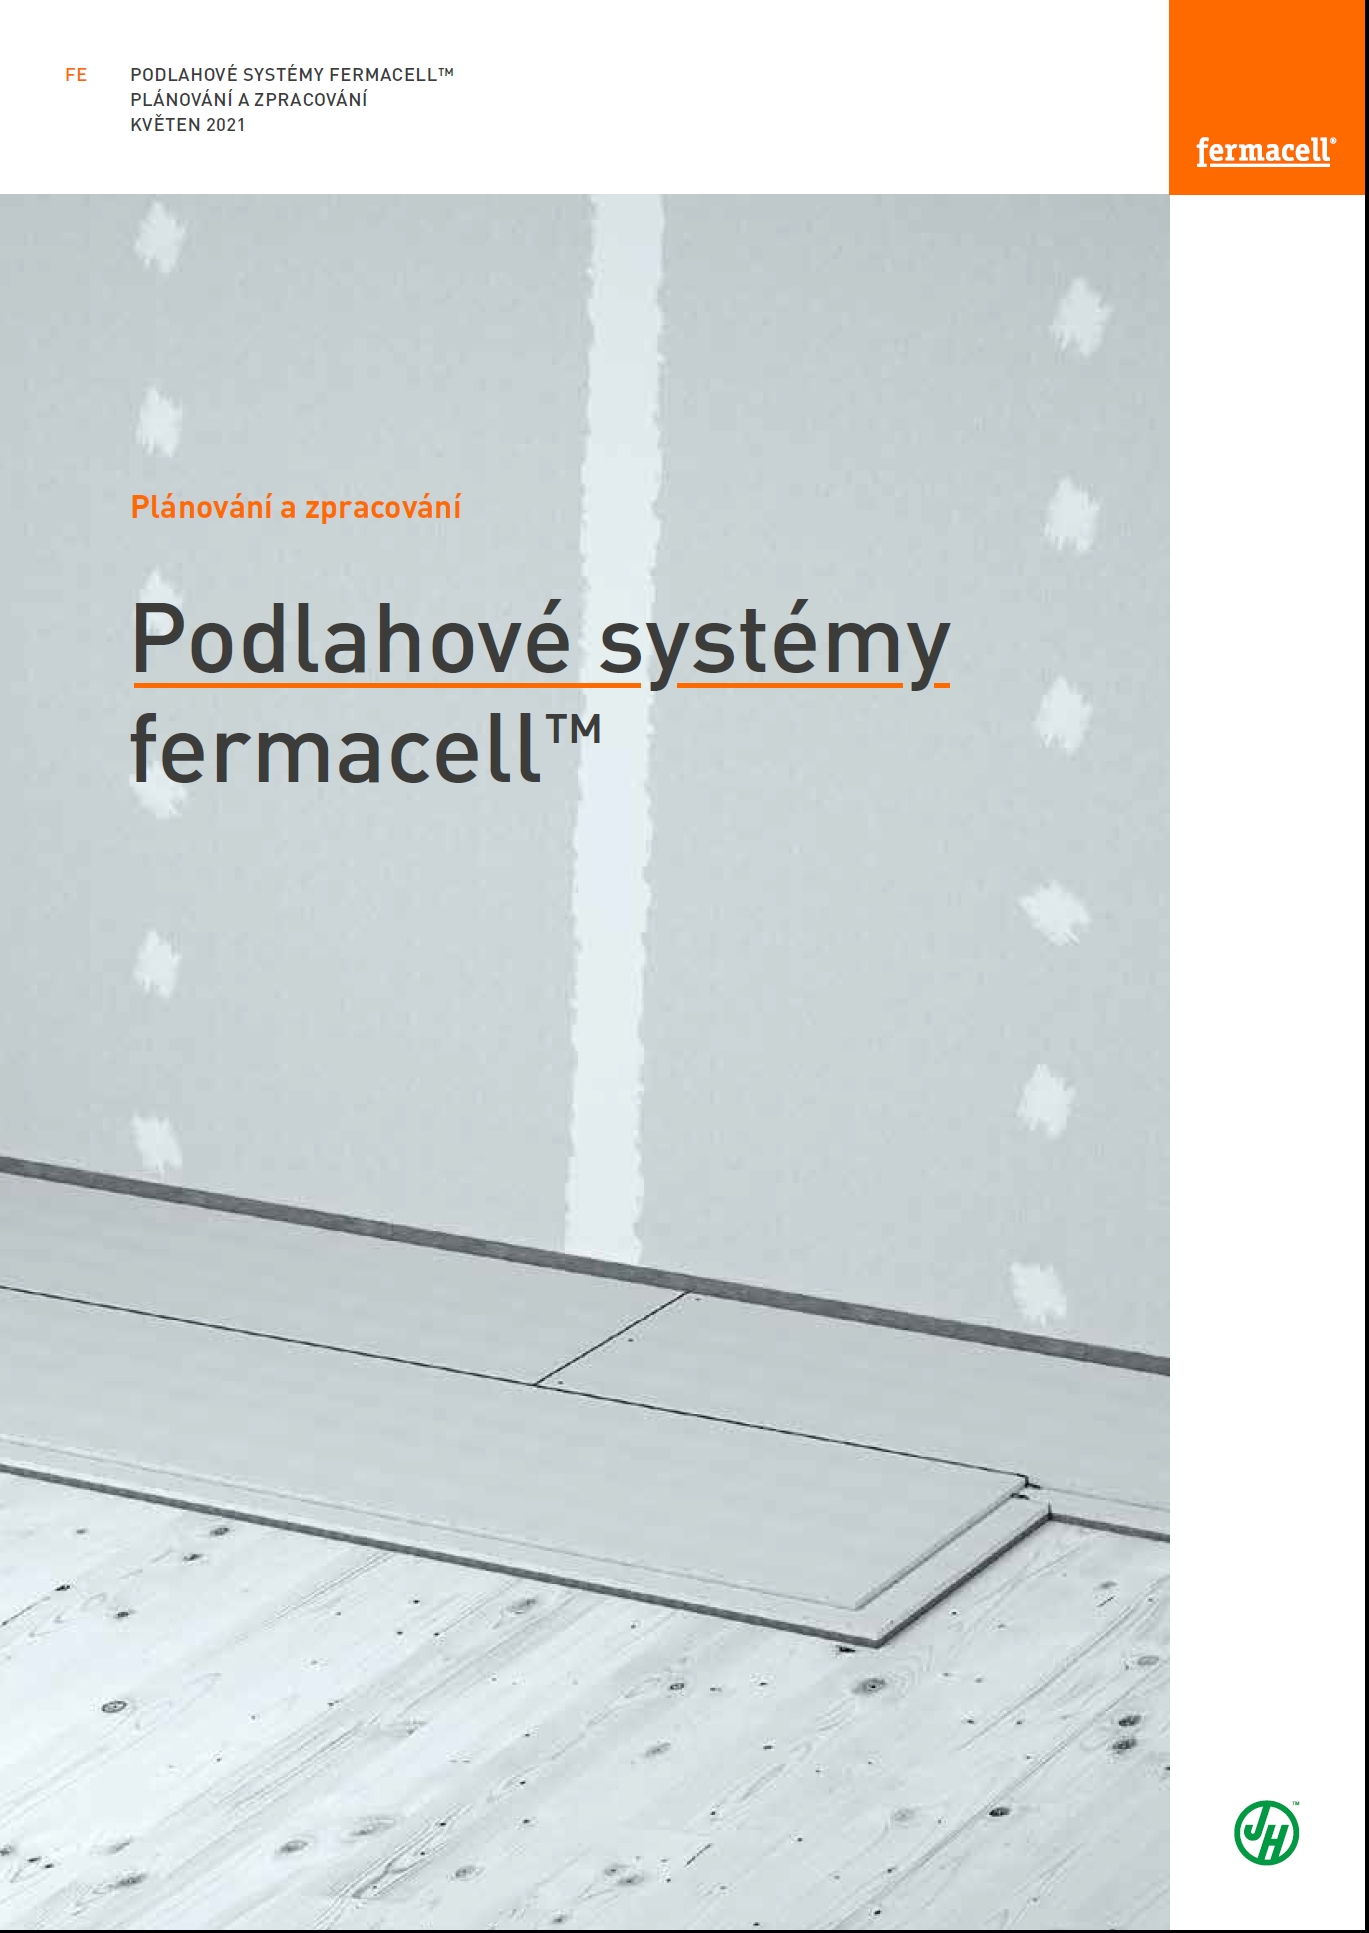 Podlahove systemy fermacell titulni stranka publikace